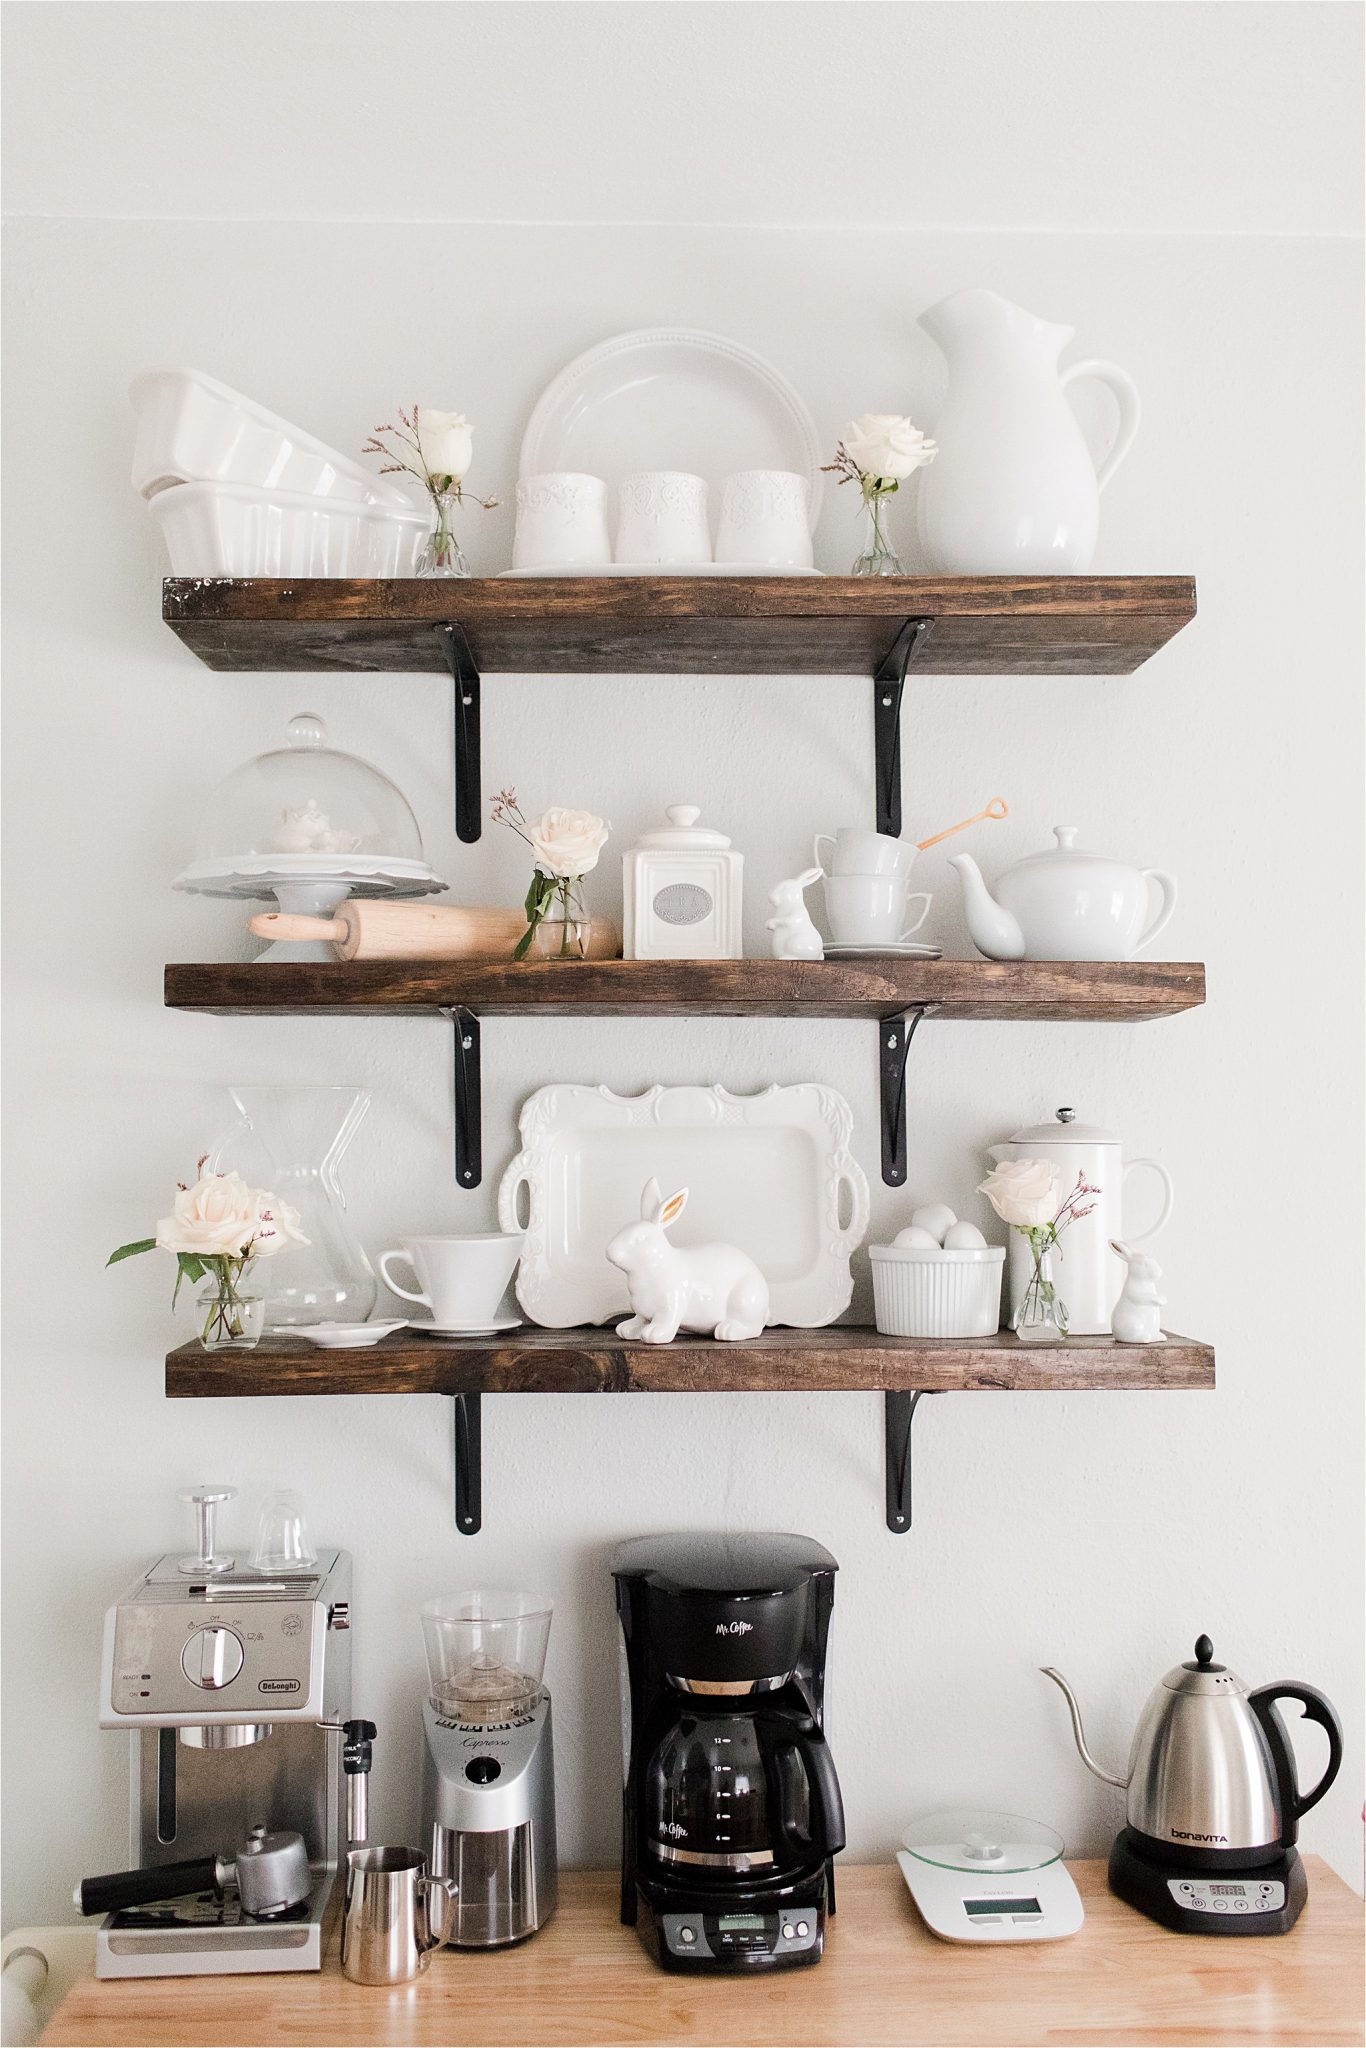 house-home-coffee-station-bar-floating-shelves-white-porcelain-decor-tea-pot-maker-grinder